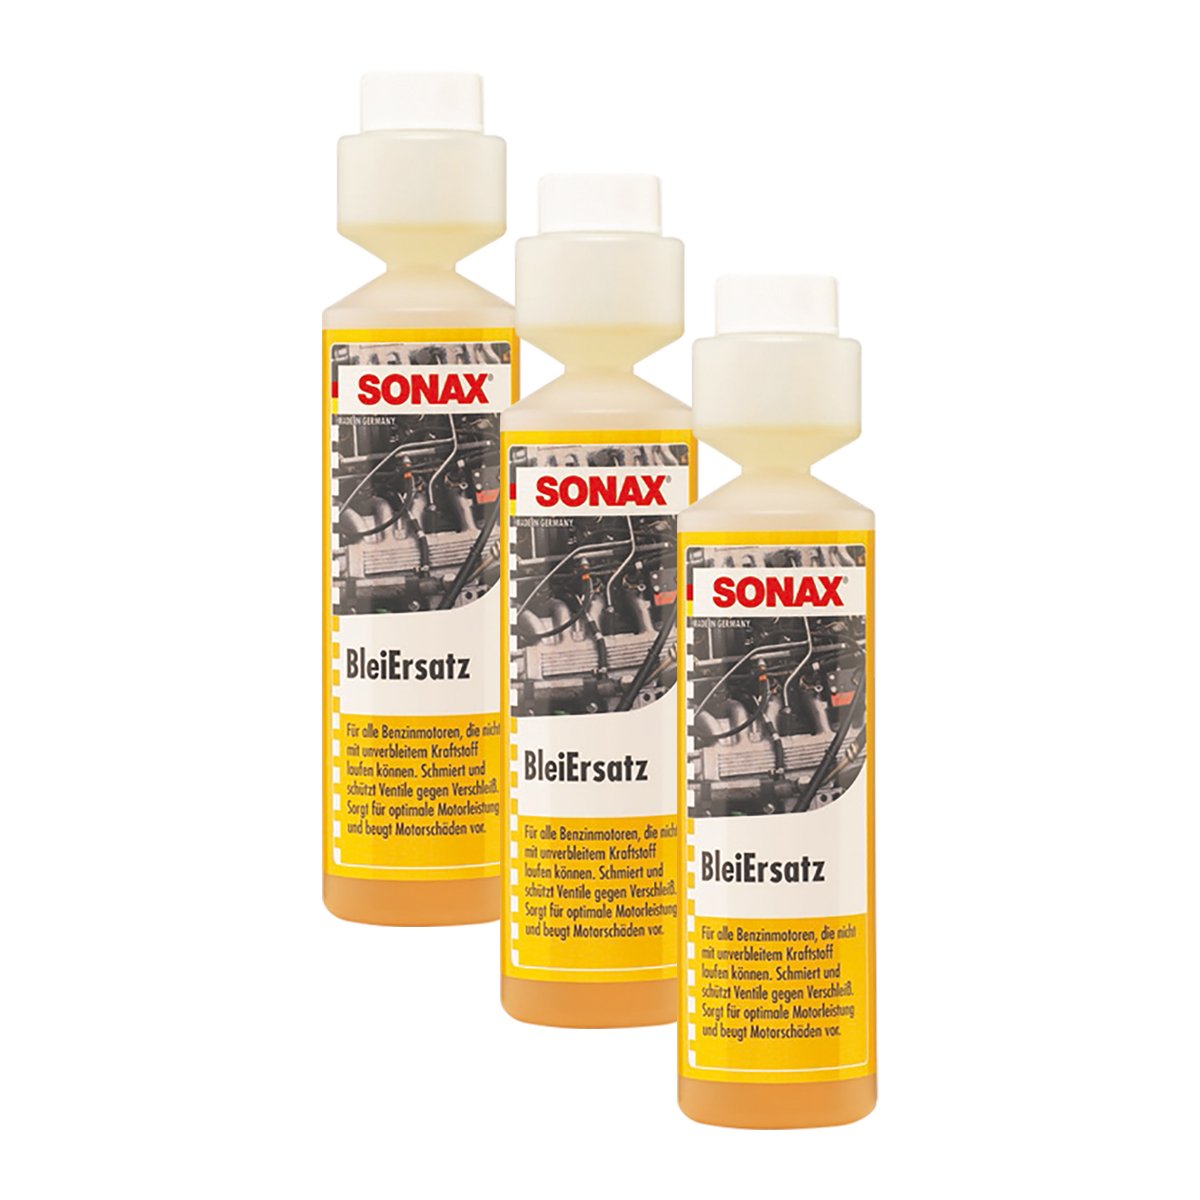 SONAX 3X 05121410 BleiErsatz Bleiersatzstoff Kraftstoff Benzin Additiv 250ml von SONAX